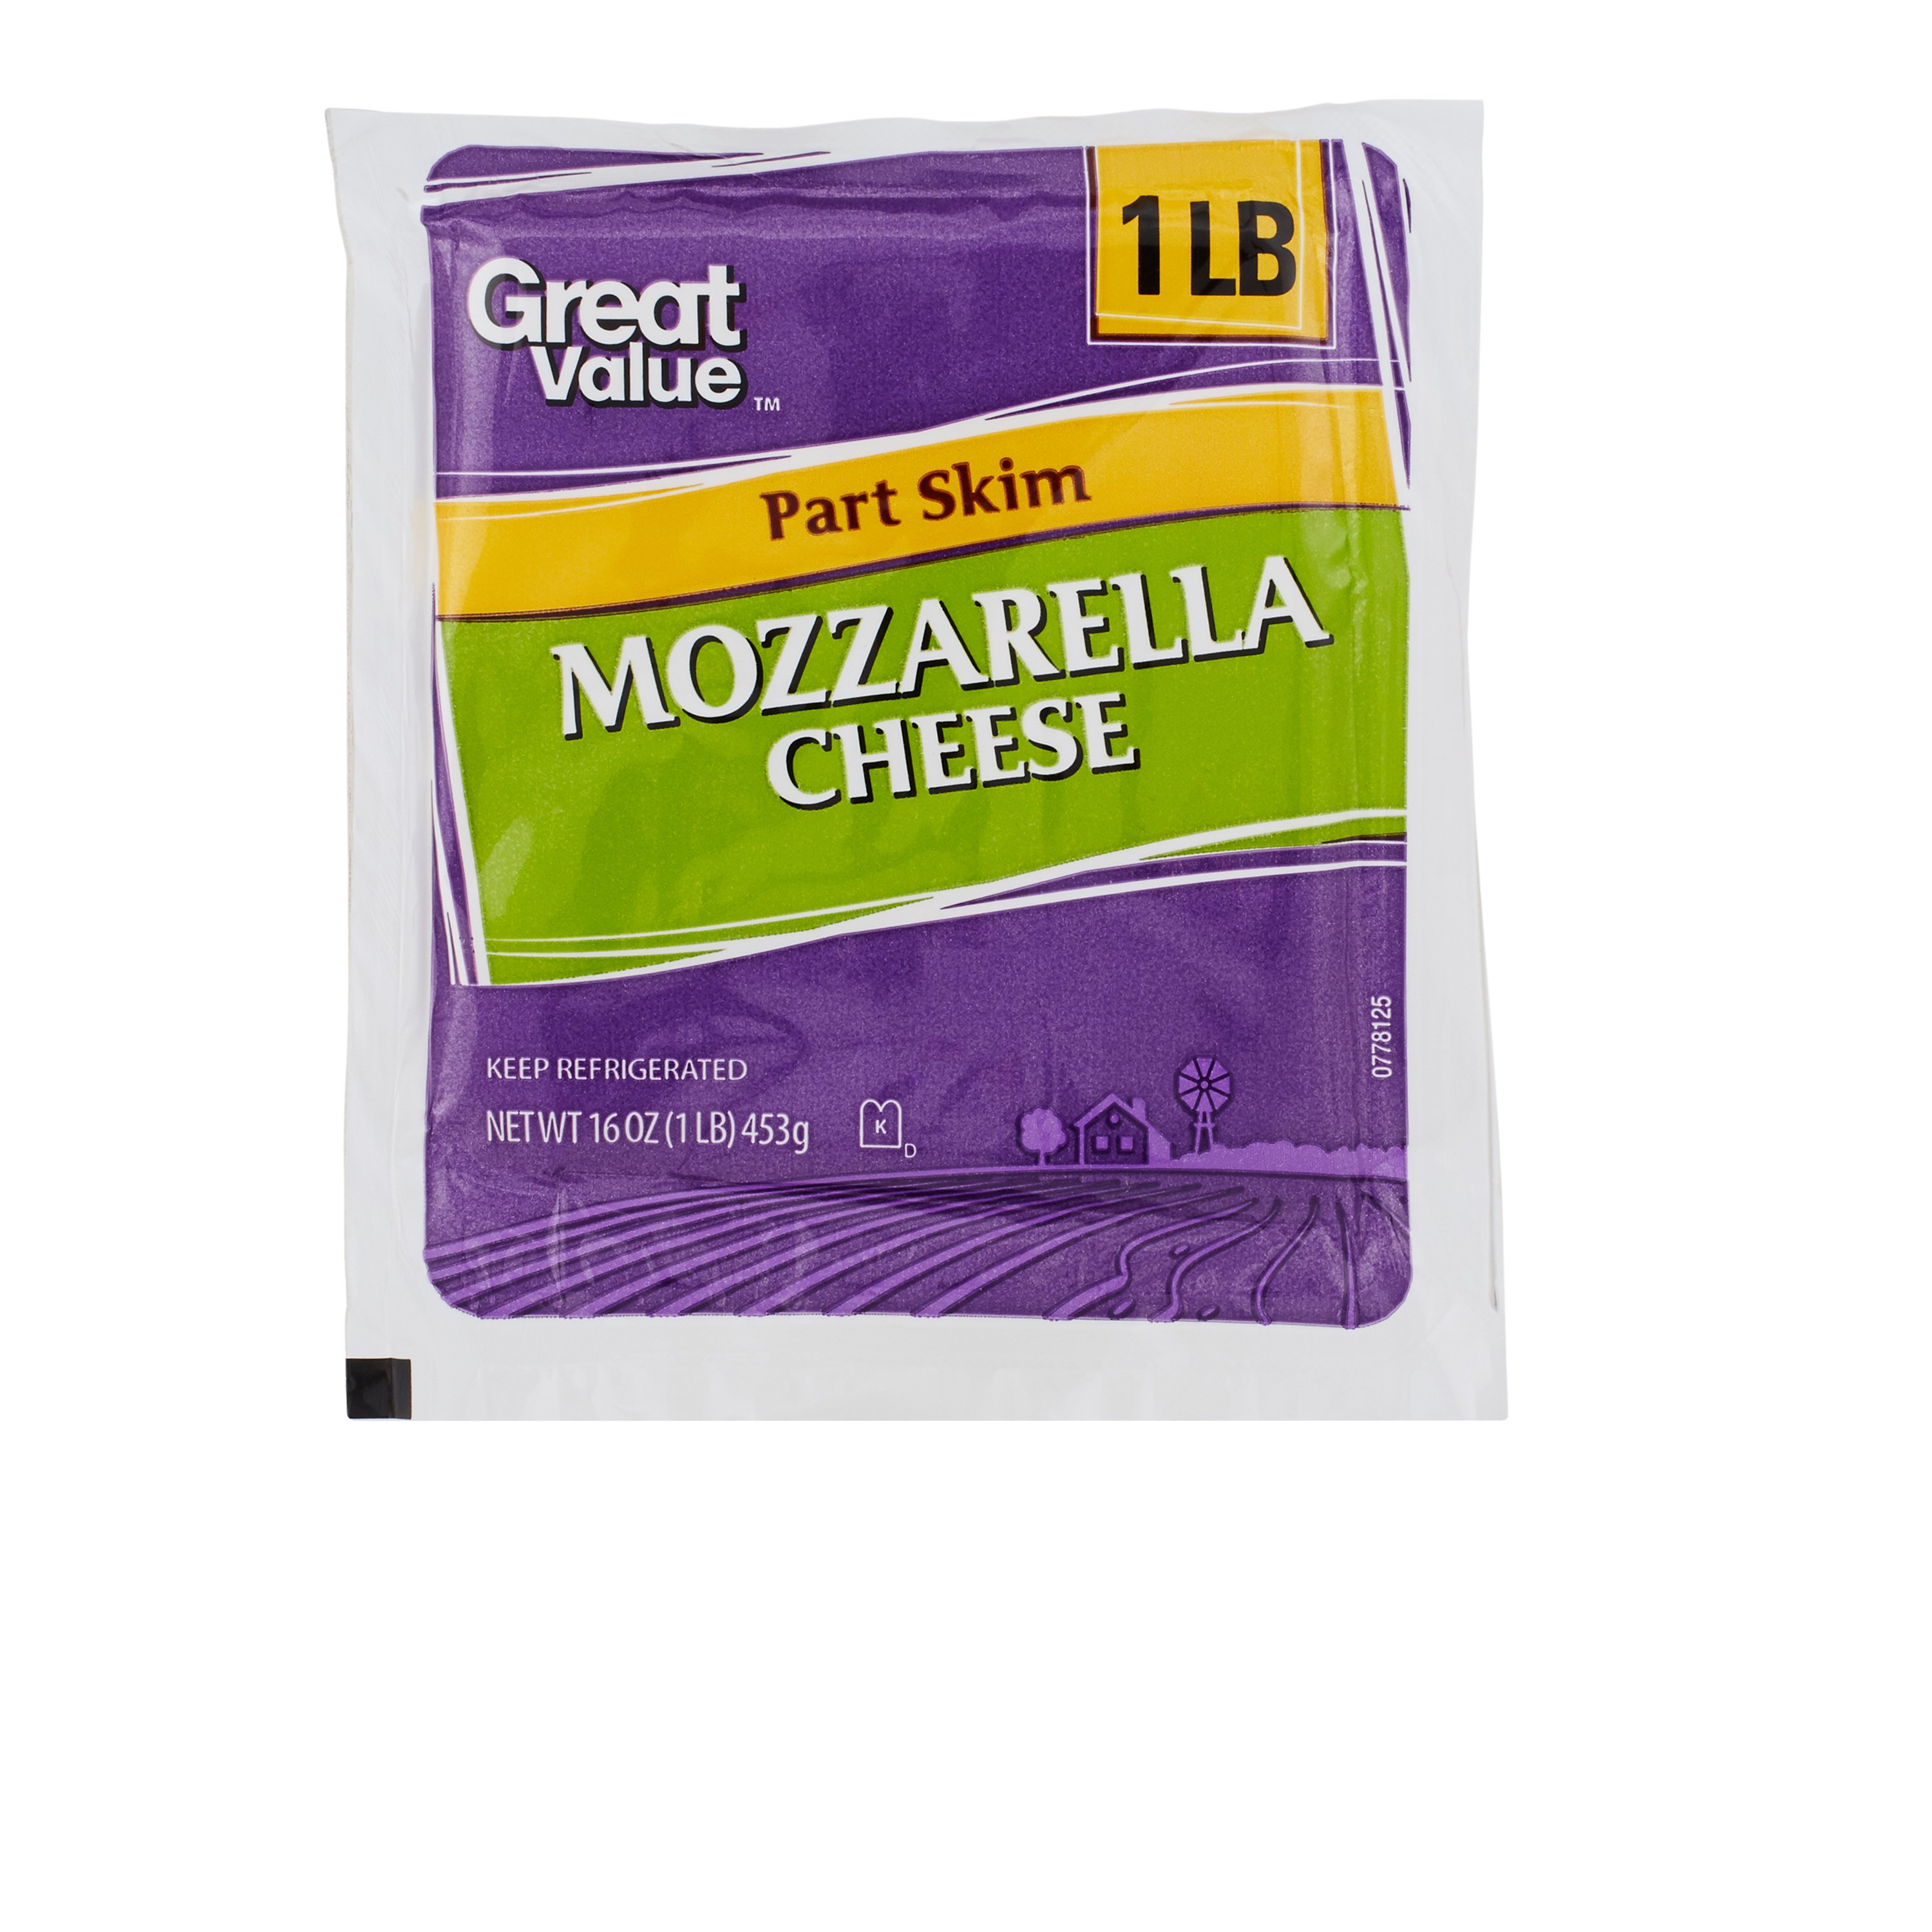 Great Value Part Skim Mozzarella Cheese, 1 Lb